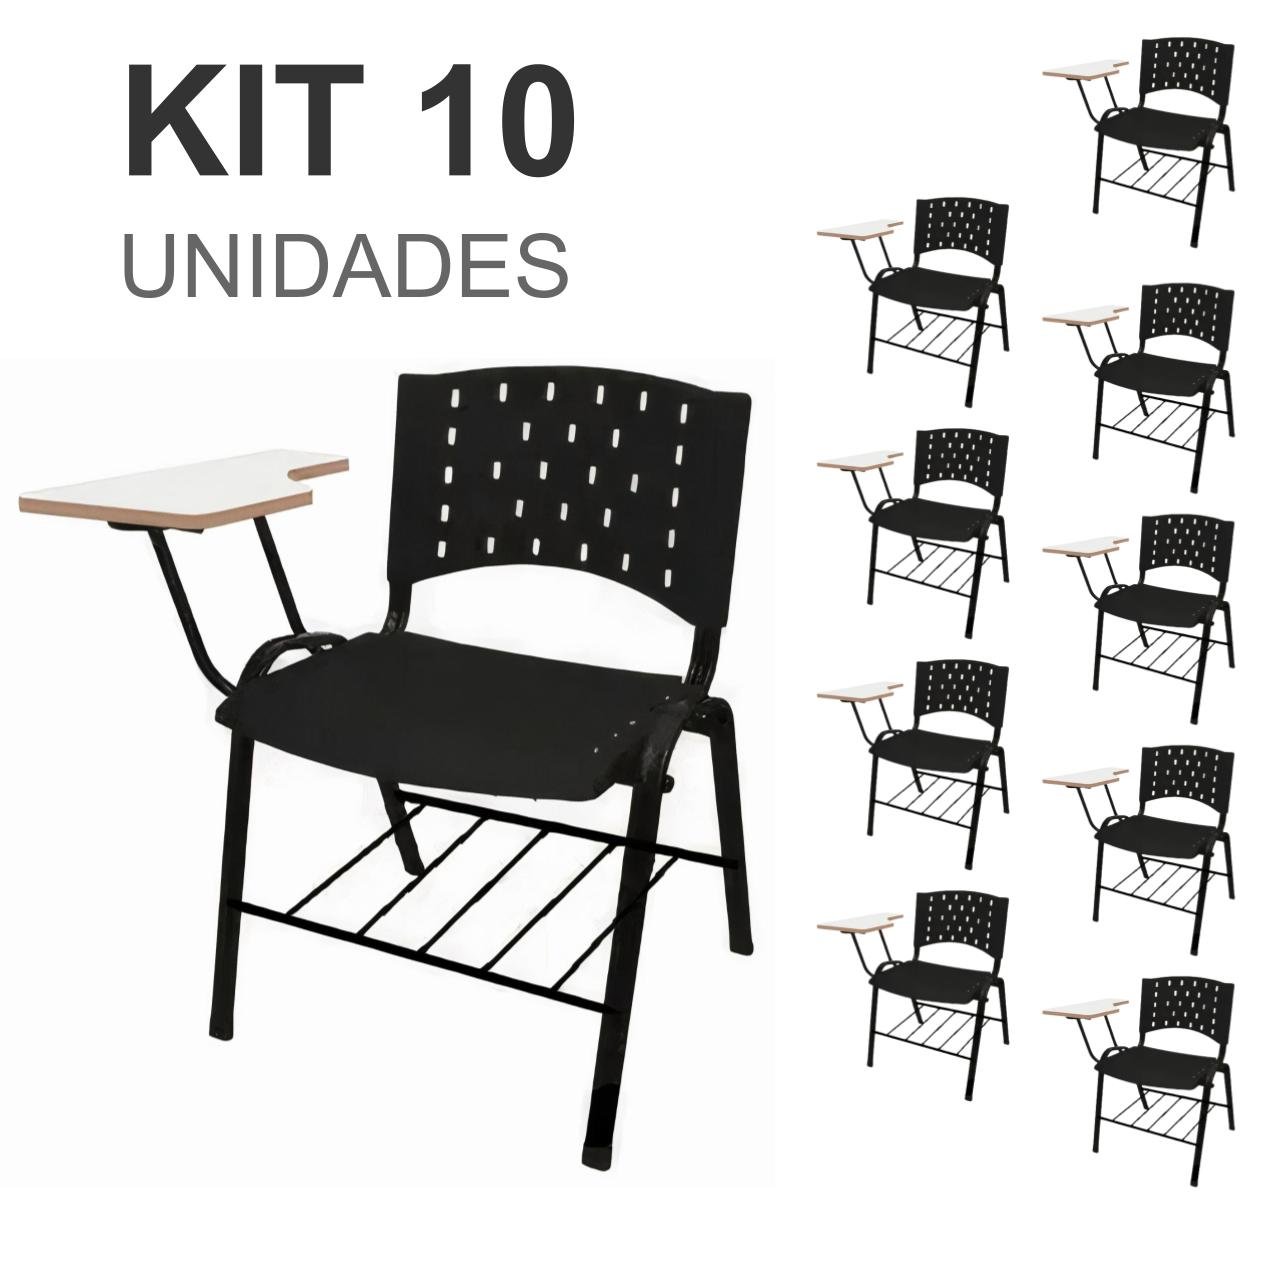 KIT 10 Cadeiras Universitárias PRETA com porta livros - 2